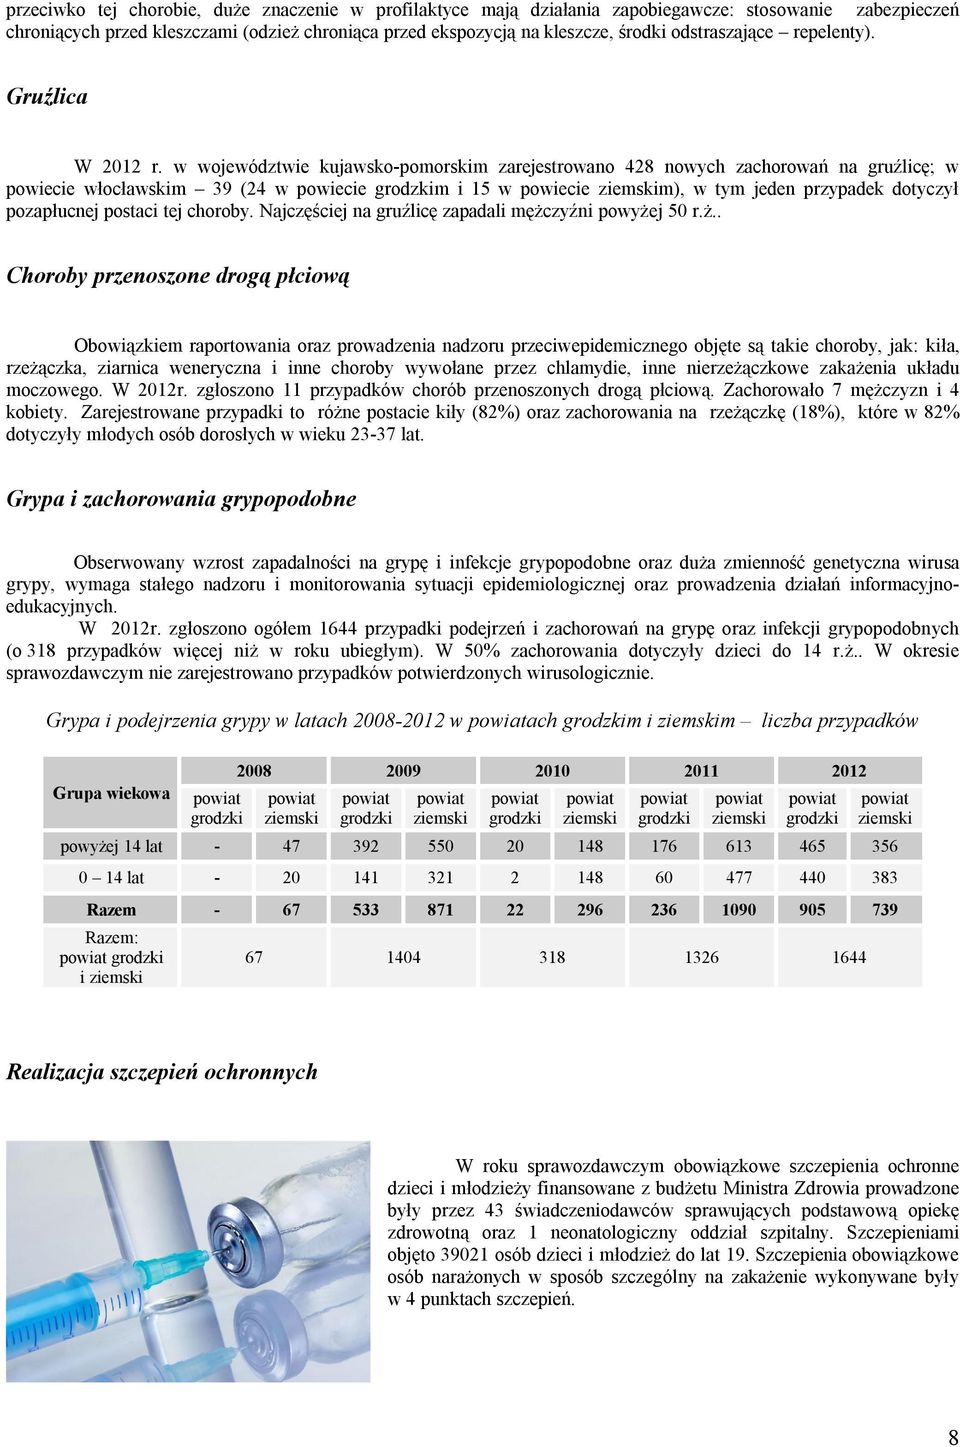 w województwie kujawsko-pomorskim zarejestrowano 428 nowych zachorowań na gruźlicę; w powiecie włocławskim 39 (24 w powiecie m i 15 w powiecie m), w tym jeden przypadek dotyczył pozapłucnej postaci